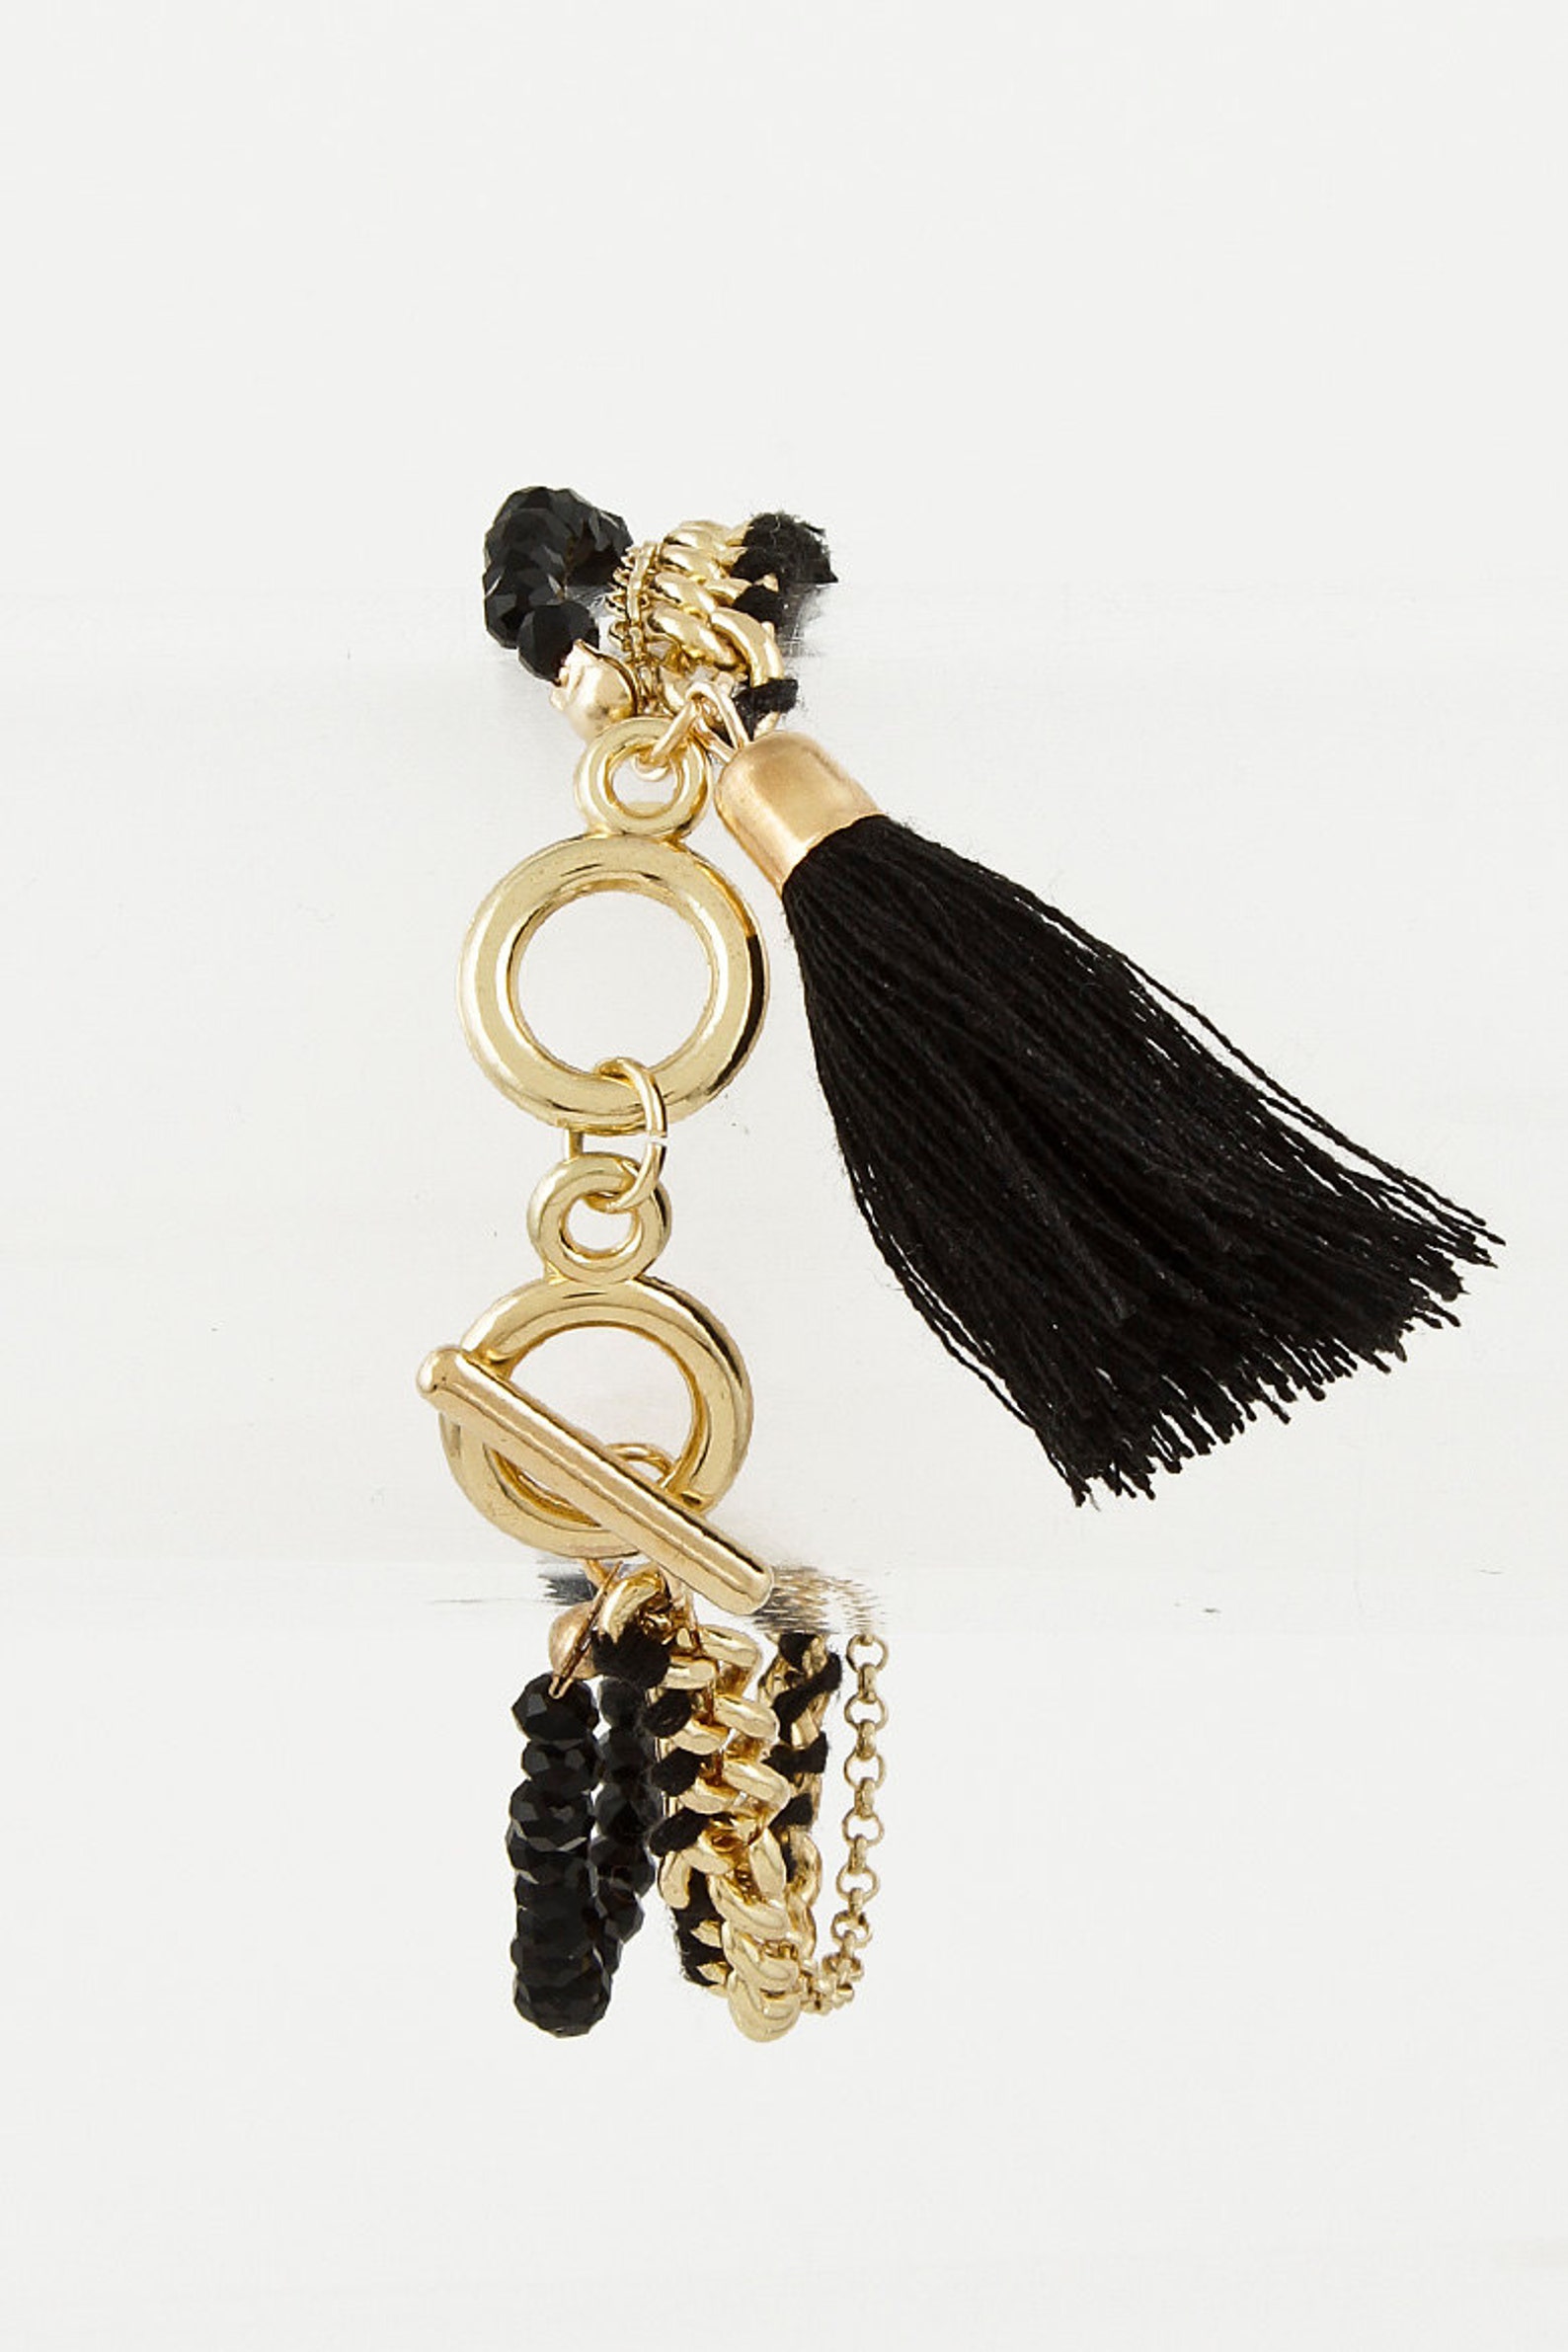 Elegant Tassel Bracelet chains tassel bracelets bead work | Etsy